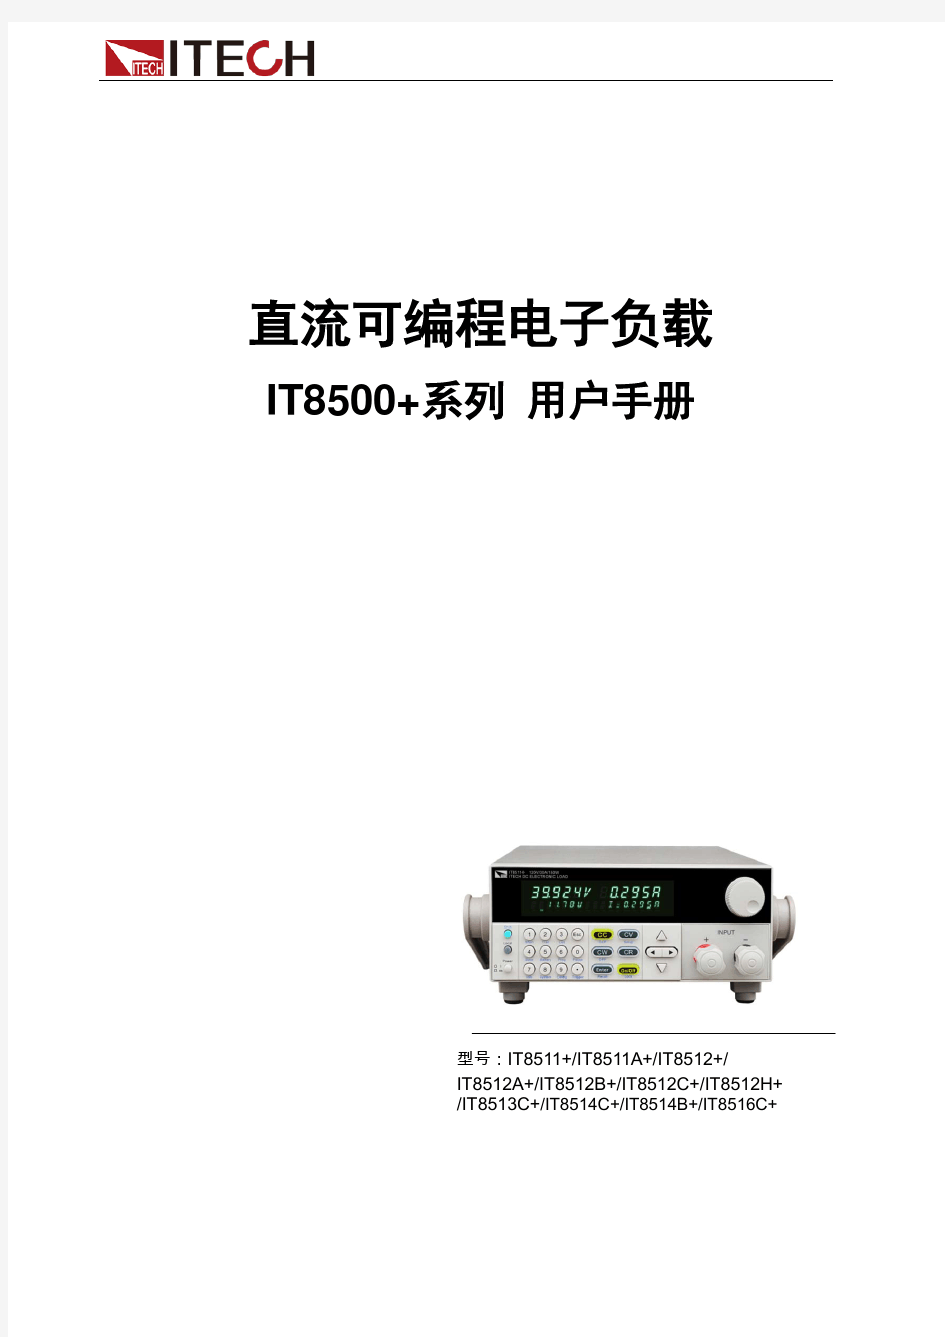 艾德克斯负载仪 IT8500+系列用户手册